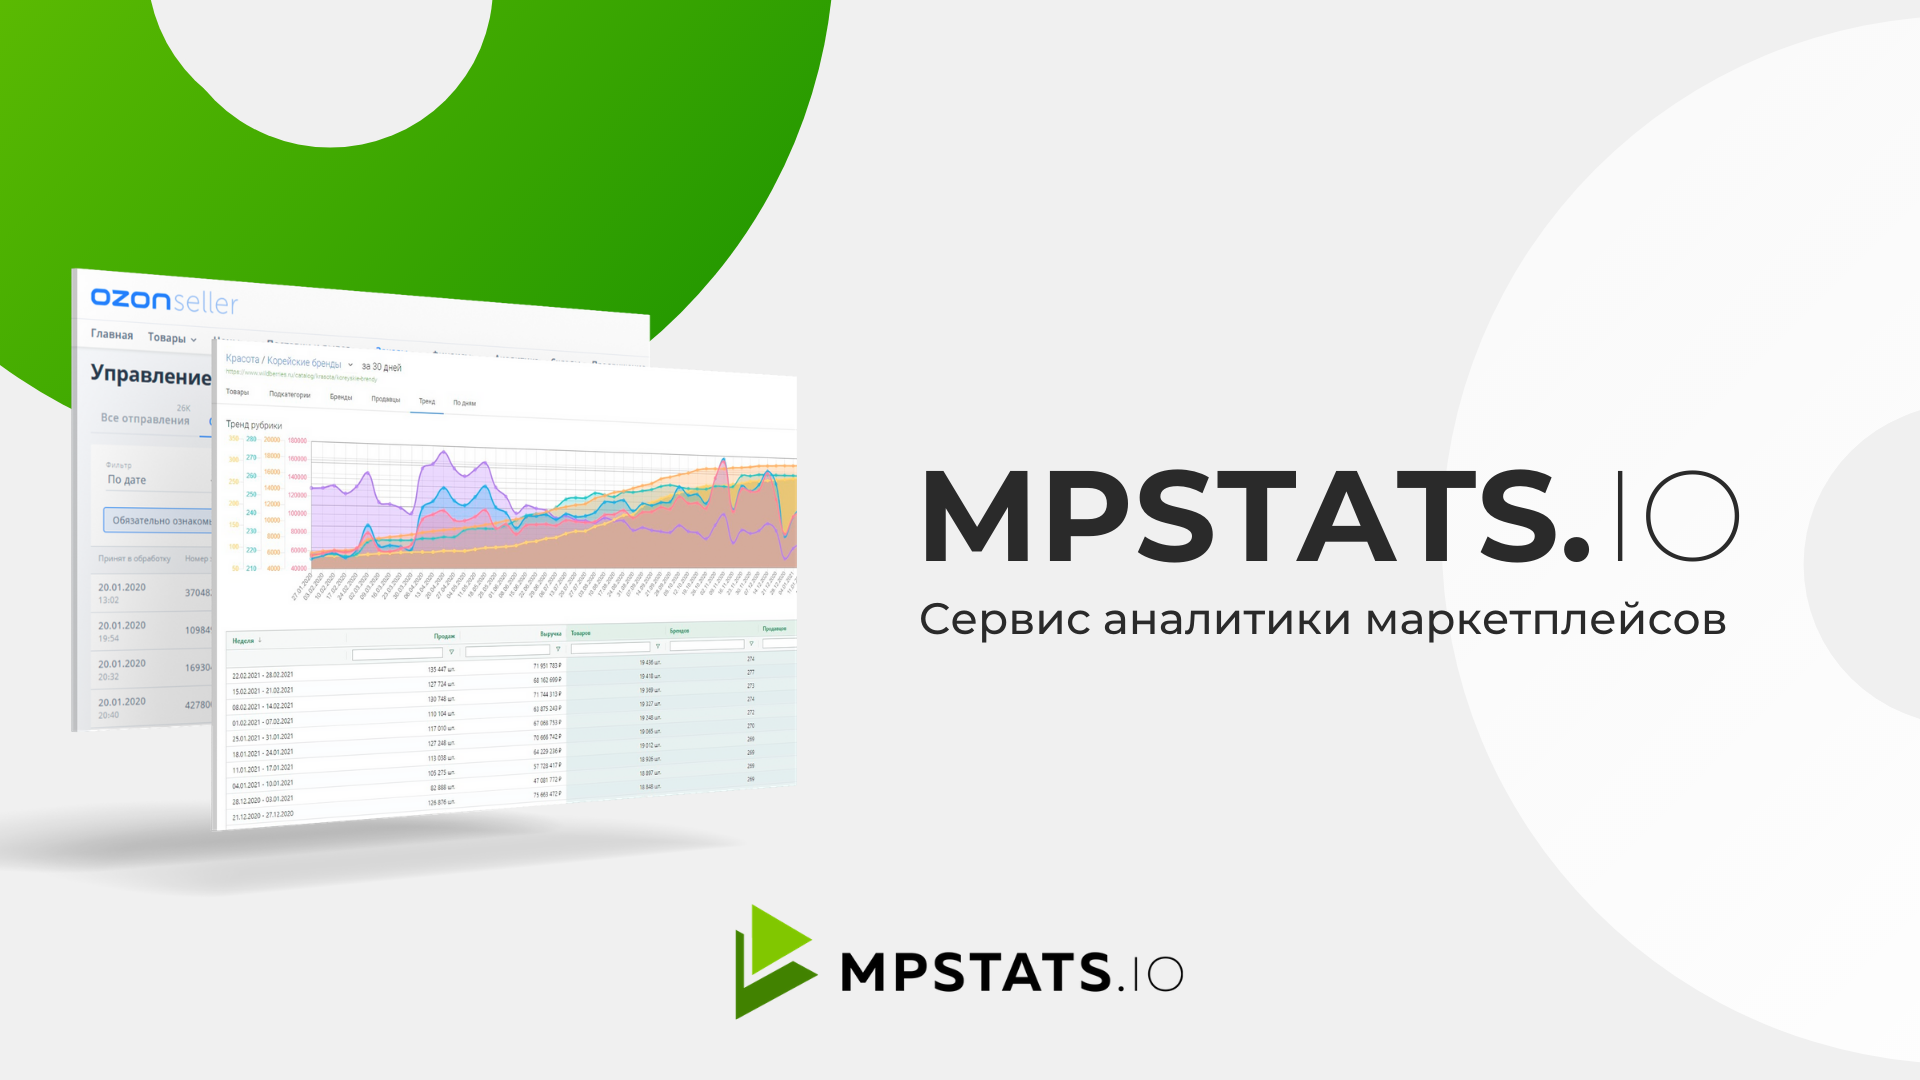 Mpstats - сервис аналитики маркетплейсов. Аналитика MP stats. Сервисы аналитики. Mpstats логотип.